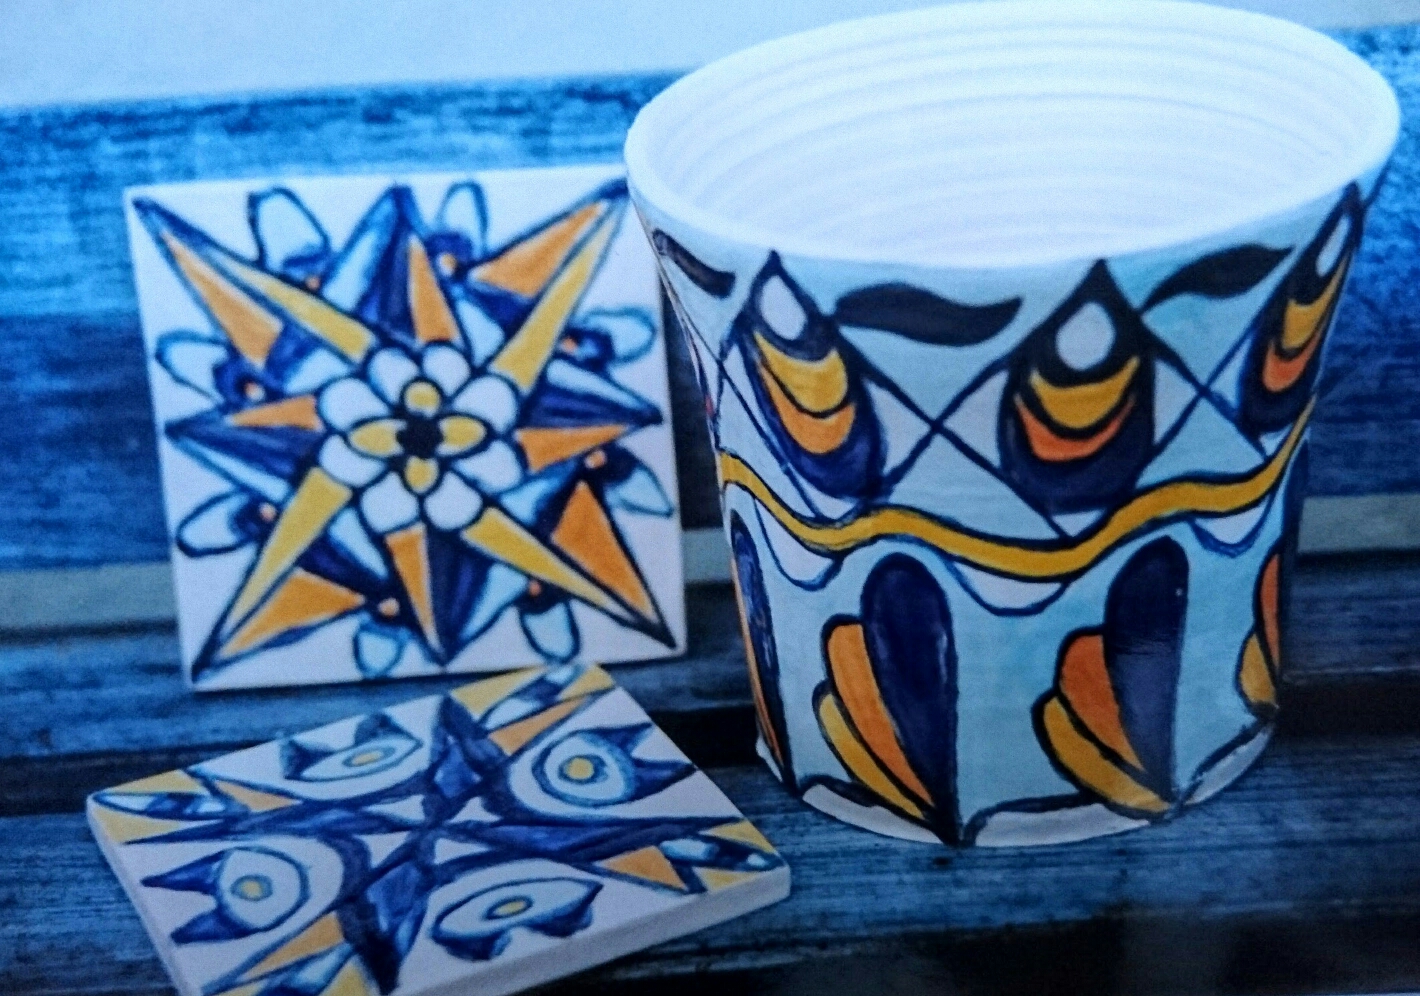 Tiles and pot azuleijos